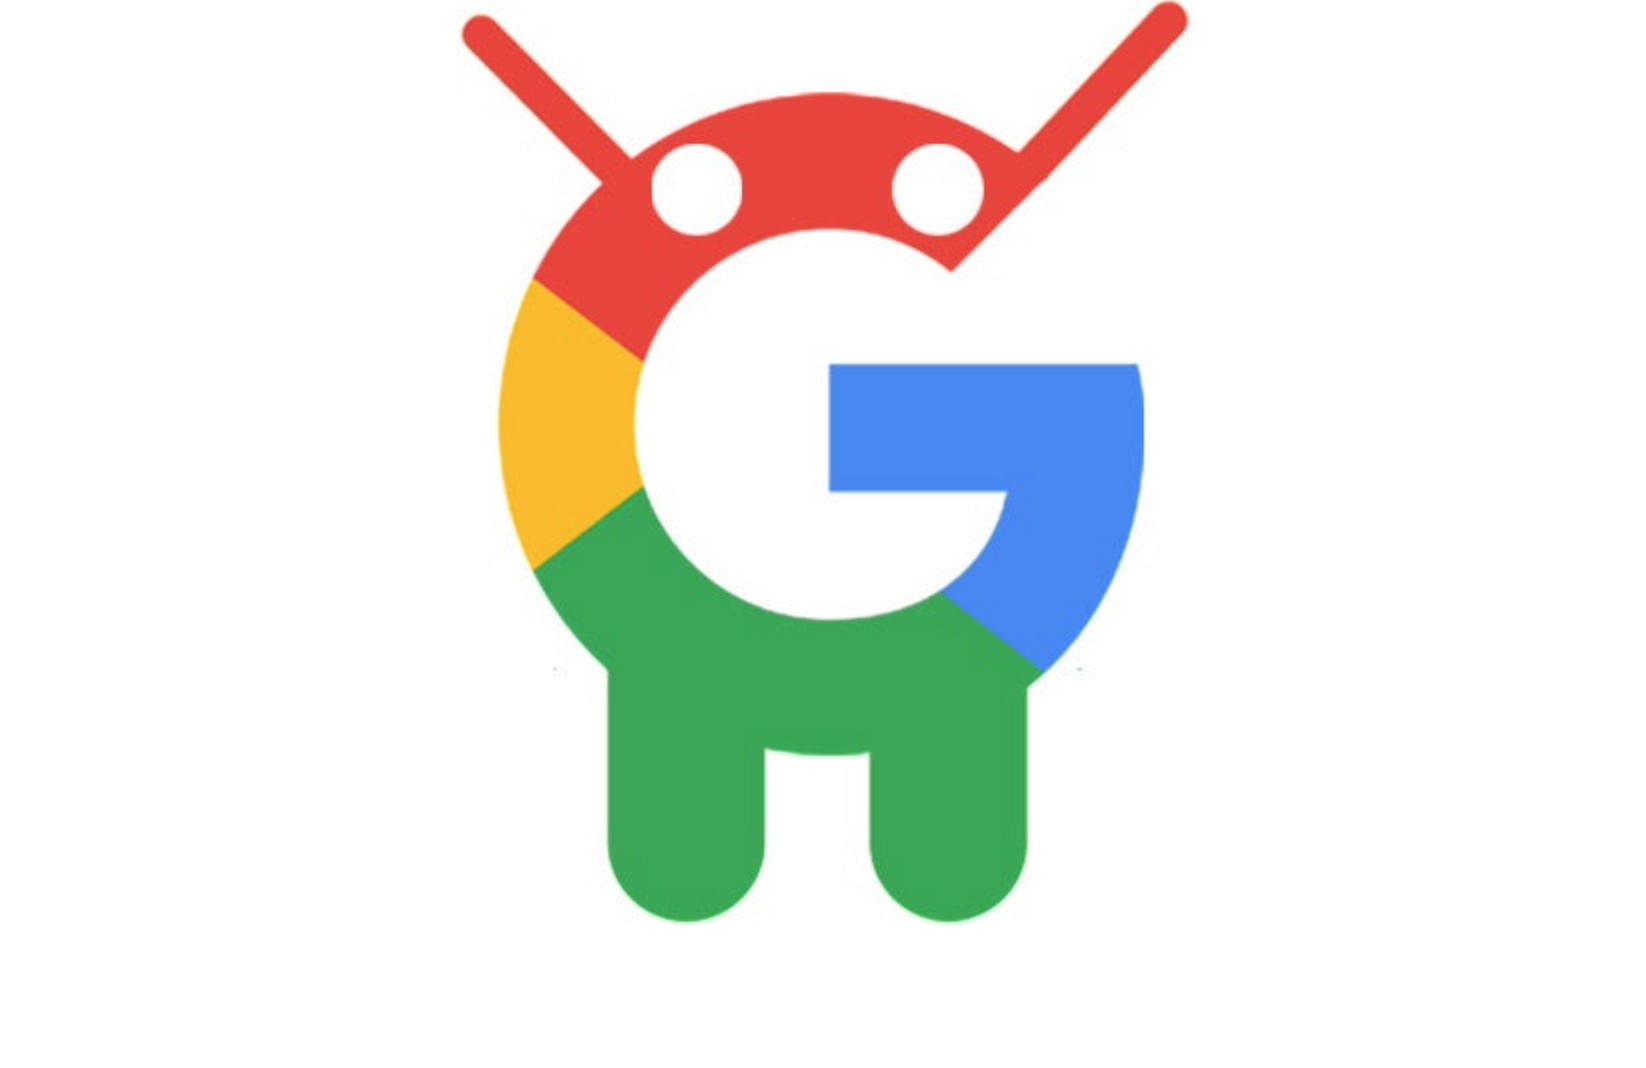 Google новый андроид. Гугл андроид. Логотип андроид. ОС Google Android. Google Android логотип.